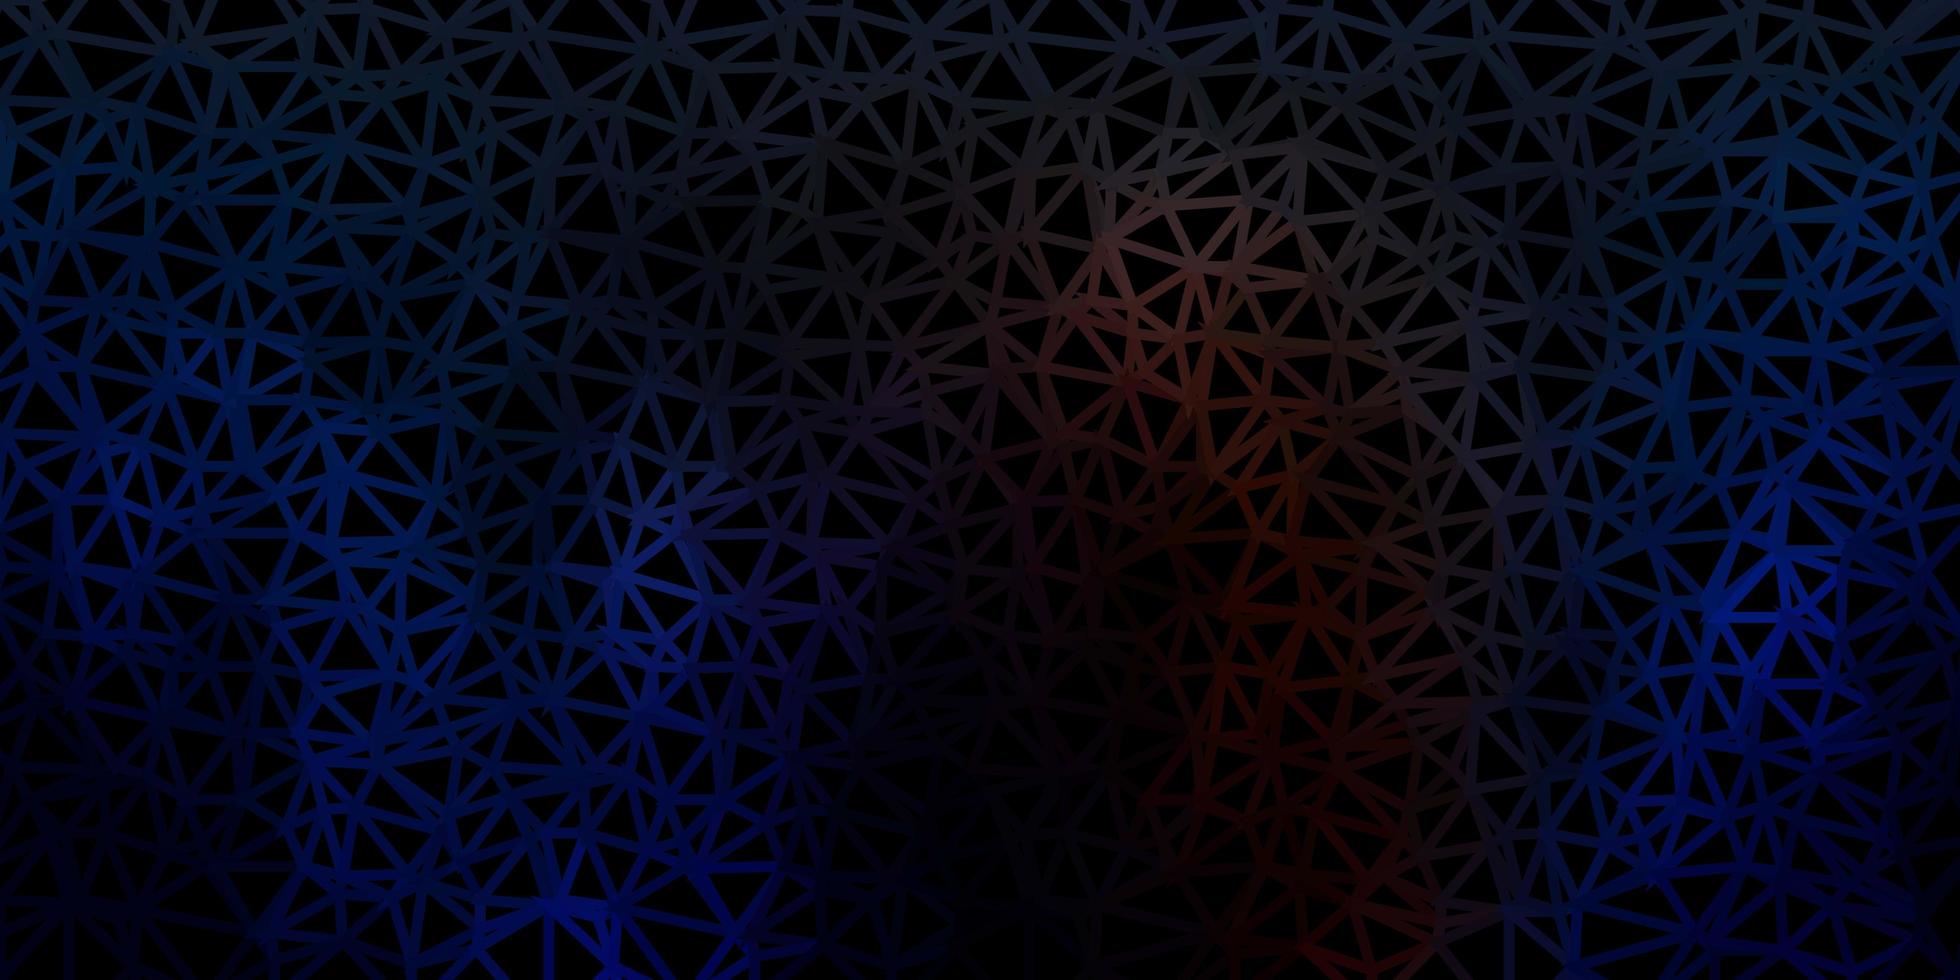 diseño poligonal geométrico vector azul oscuro, amarillo.